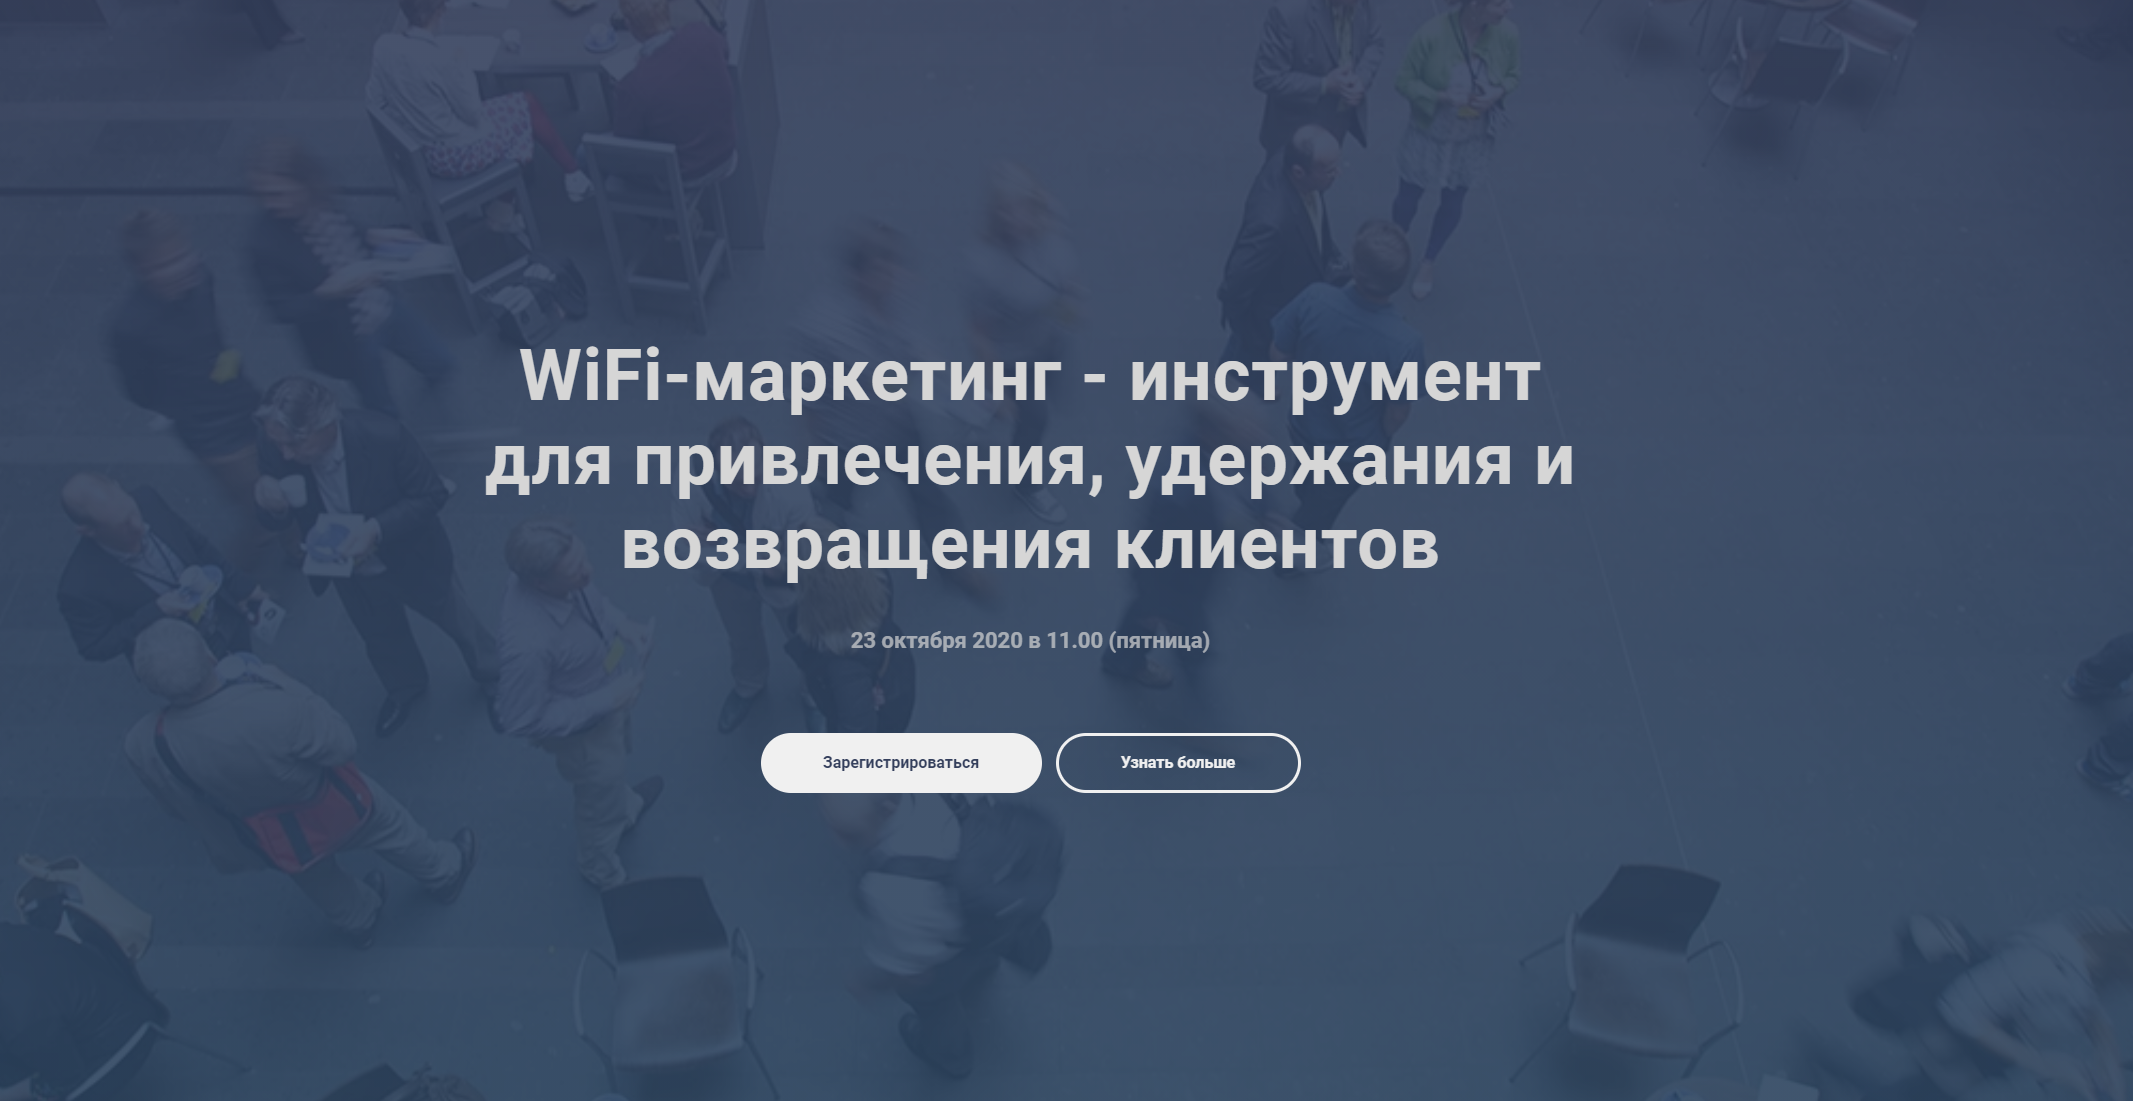 В Архангельске  предпринимателям  бесплатно расскажут  о WiFi-маркетинге